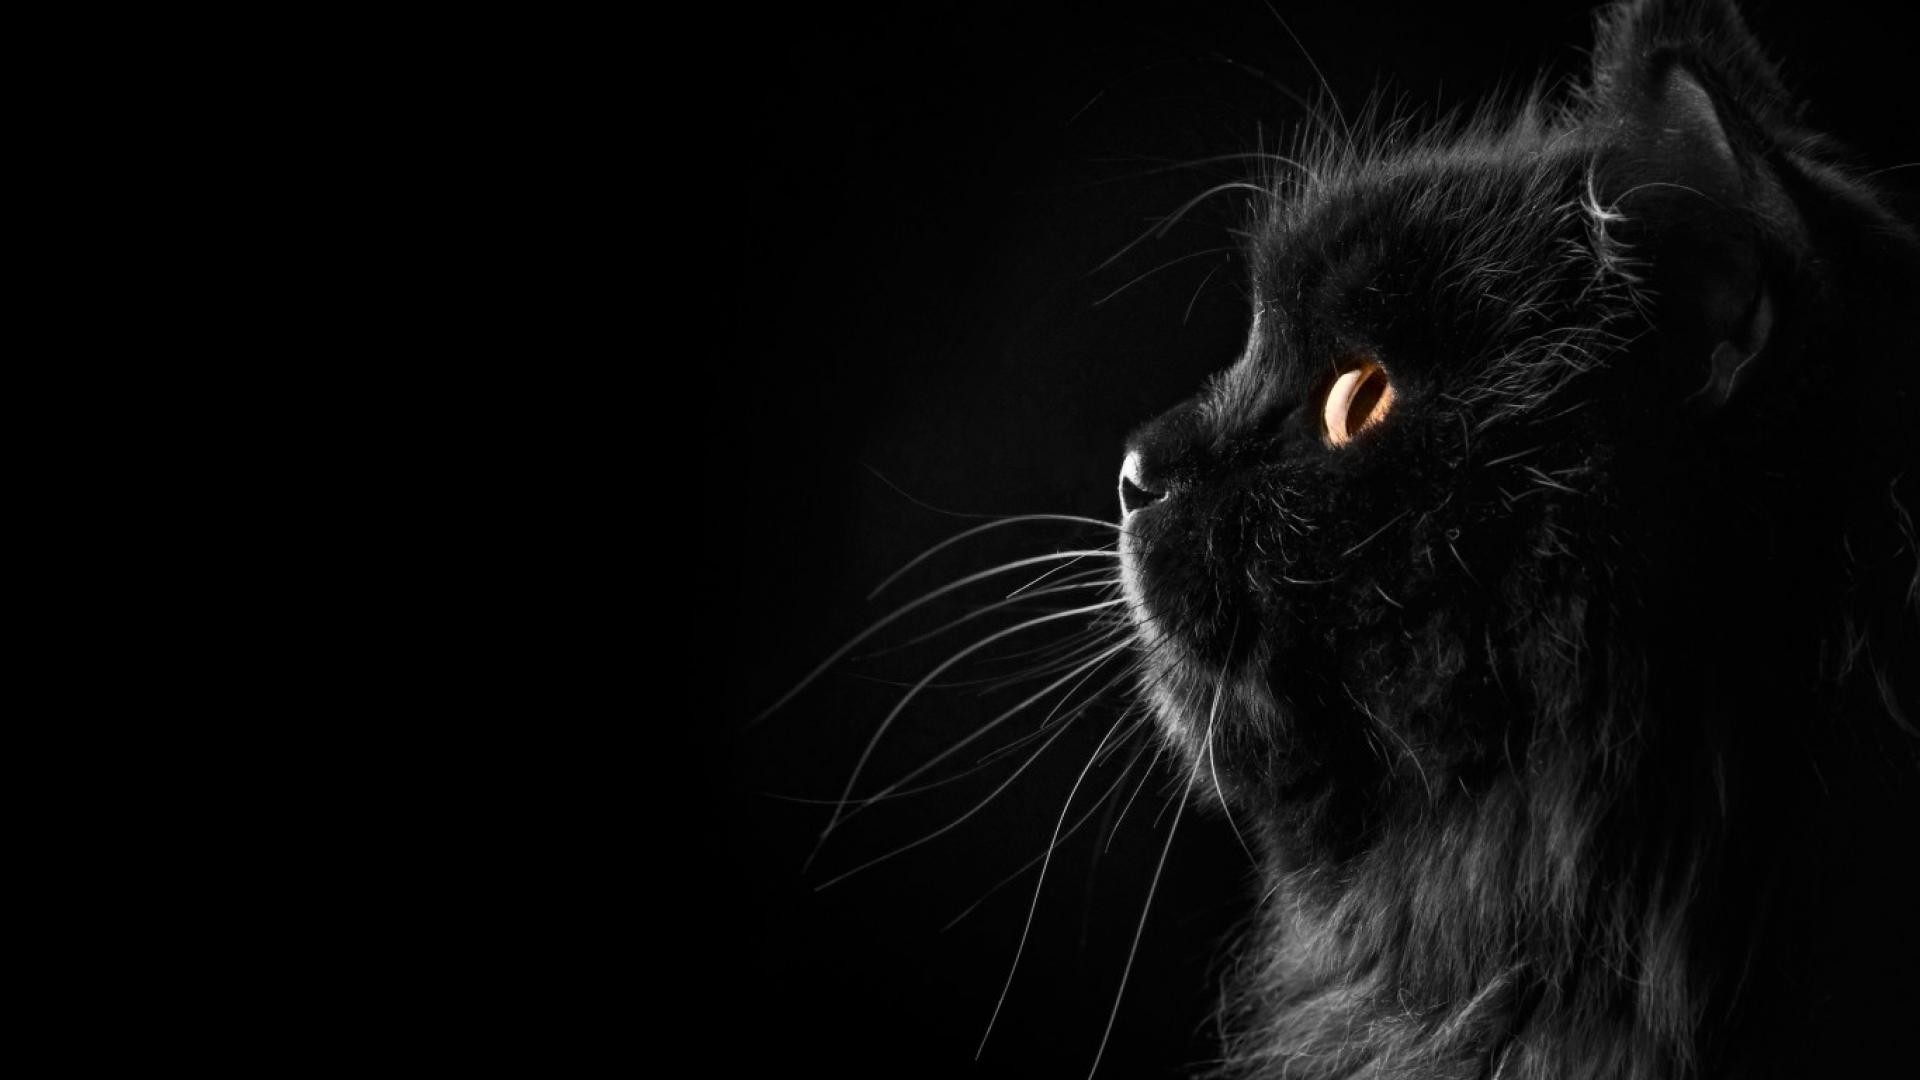 Hình nền với hình ảnh mèo đen đáng yêu sẽ khiến bạn không thể rời mắt. Những hình ảnh đáng yêu và ngộ nghĩnh của những chú mèo đen sẽ tạo ra sự thư giãn và yên bình cho bạn. Hãy ngắm nhìn và cảm nhận nét đẹp của những chú mèo đen.